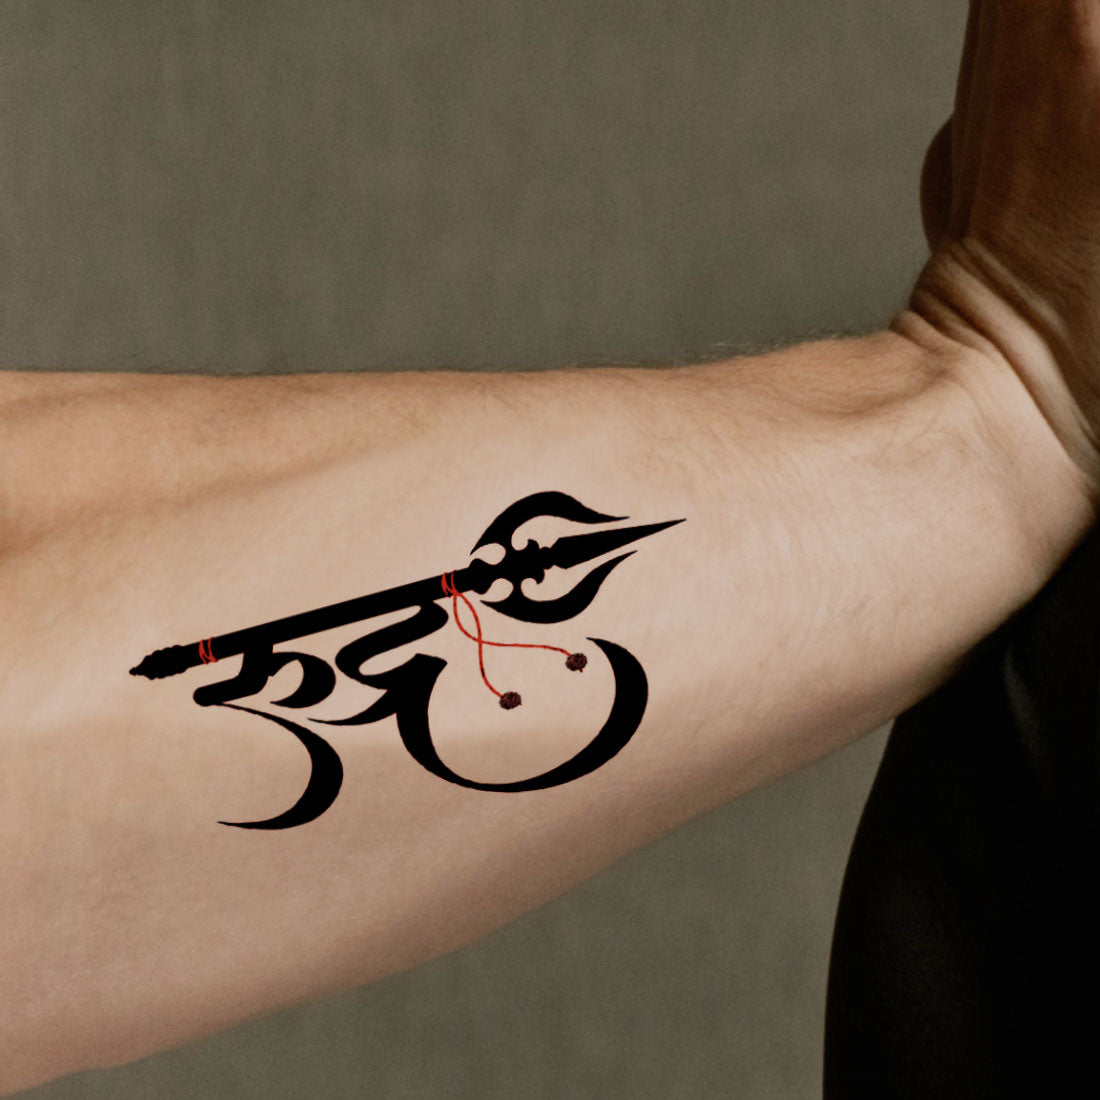 Tattoo uploaded by Vipul Chaudhary • Trishul tattoo |trishul tattoo design  |Mahadev Trishul tattoo |Trishul tattoo with om • Tattoodo